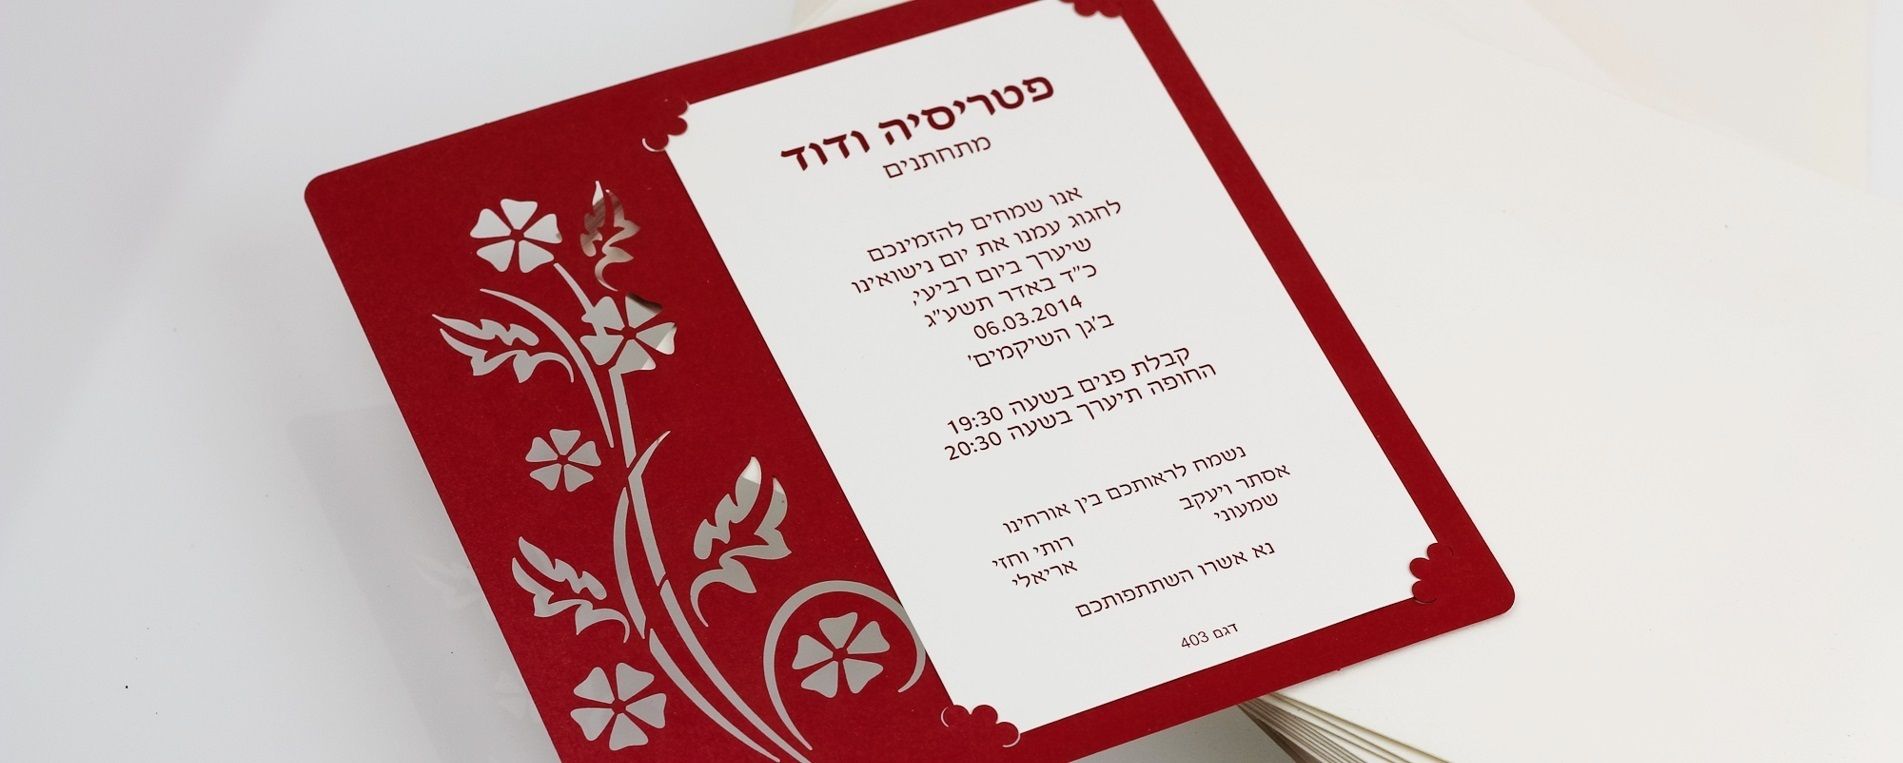 Laser cutting of a wedding invitation